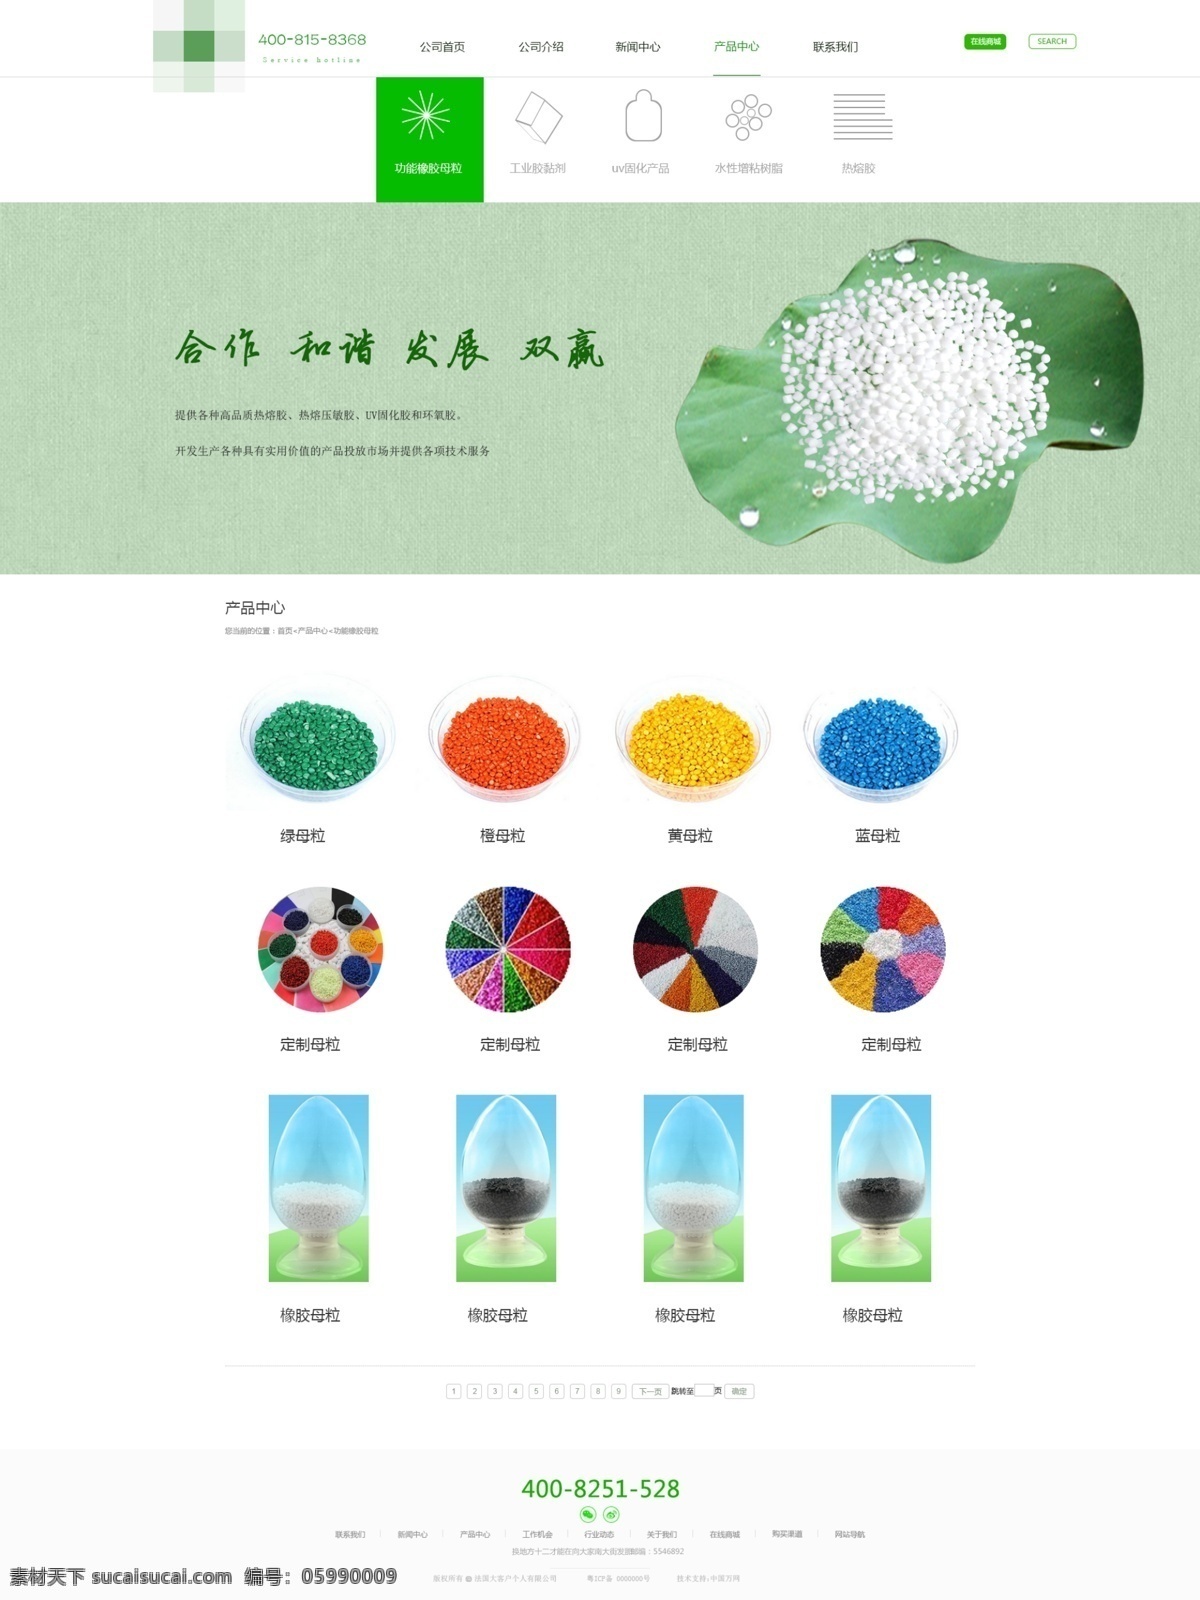 企业站 产品中心 小图标 图标 化工类 整站 banner 网站 web 界面设计 中文模板